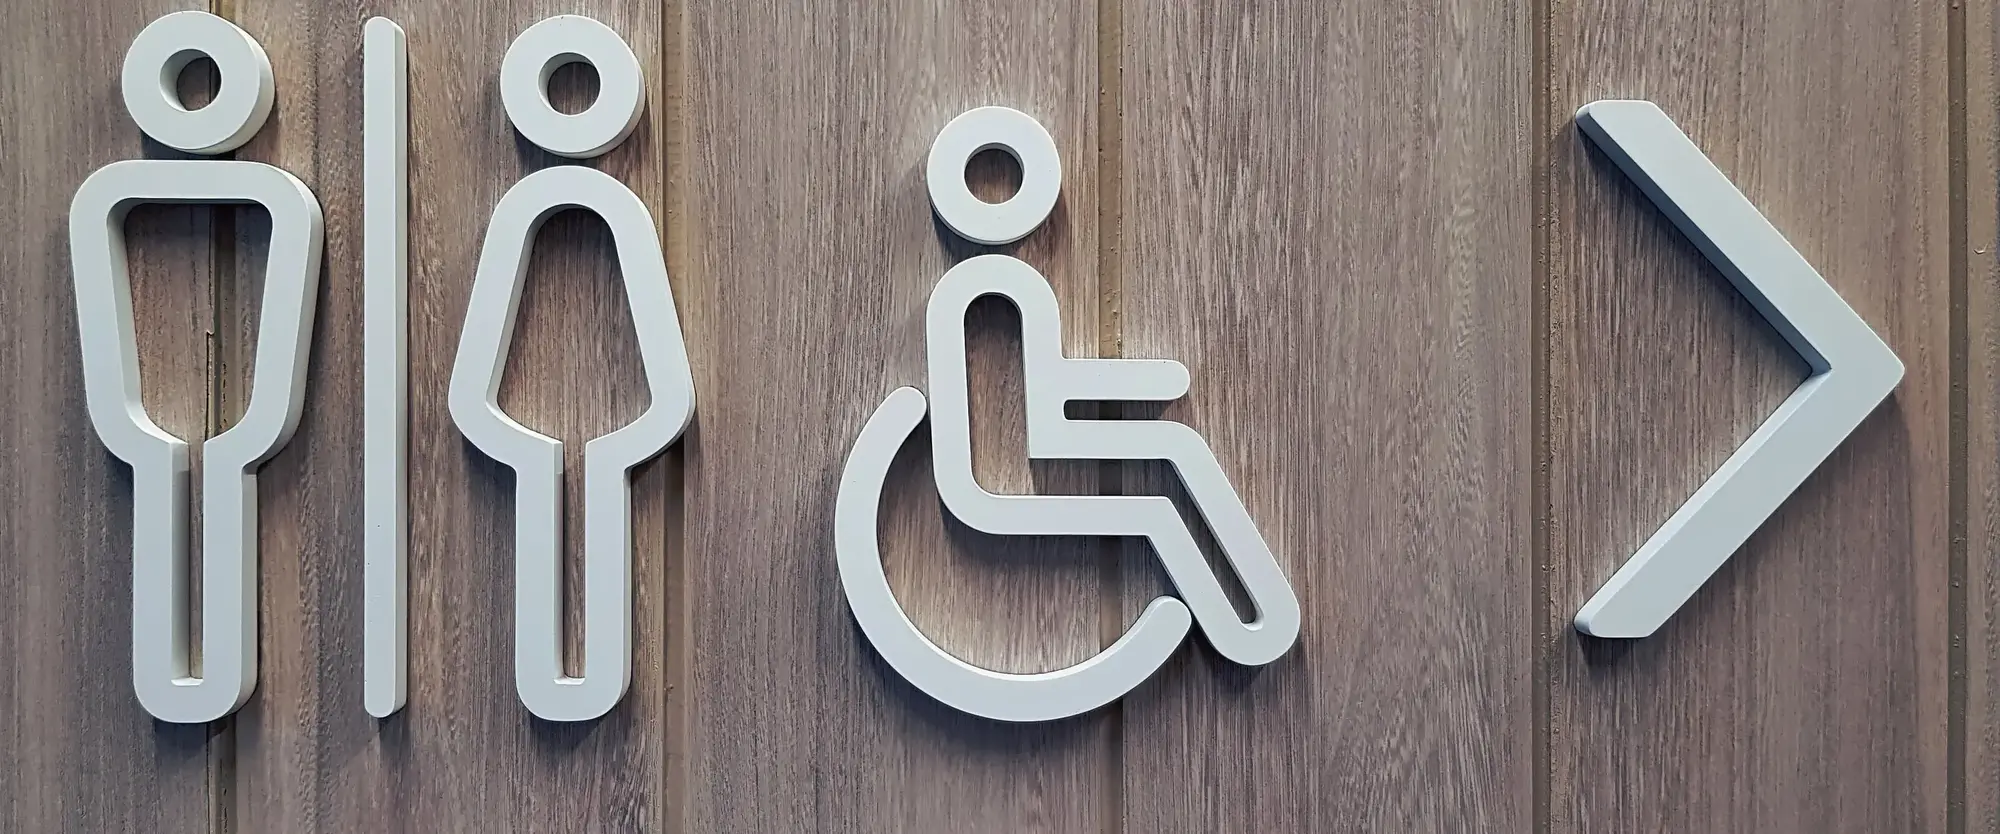 Toilettenschild mit Männchen für Damen, Herren und barrierefreies WC mit Richtungspfeil.